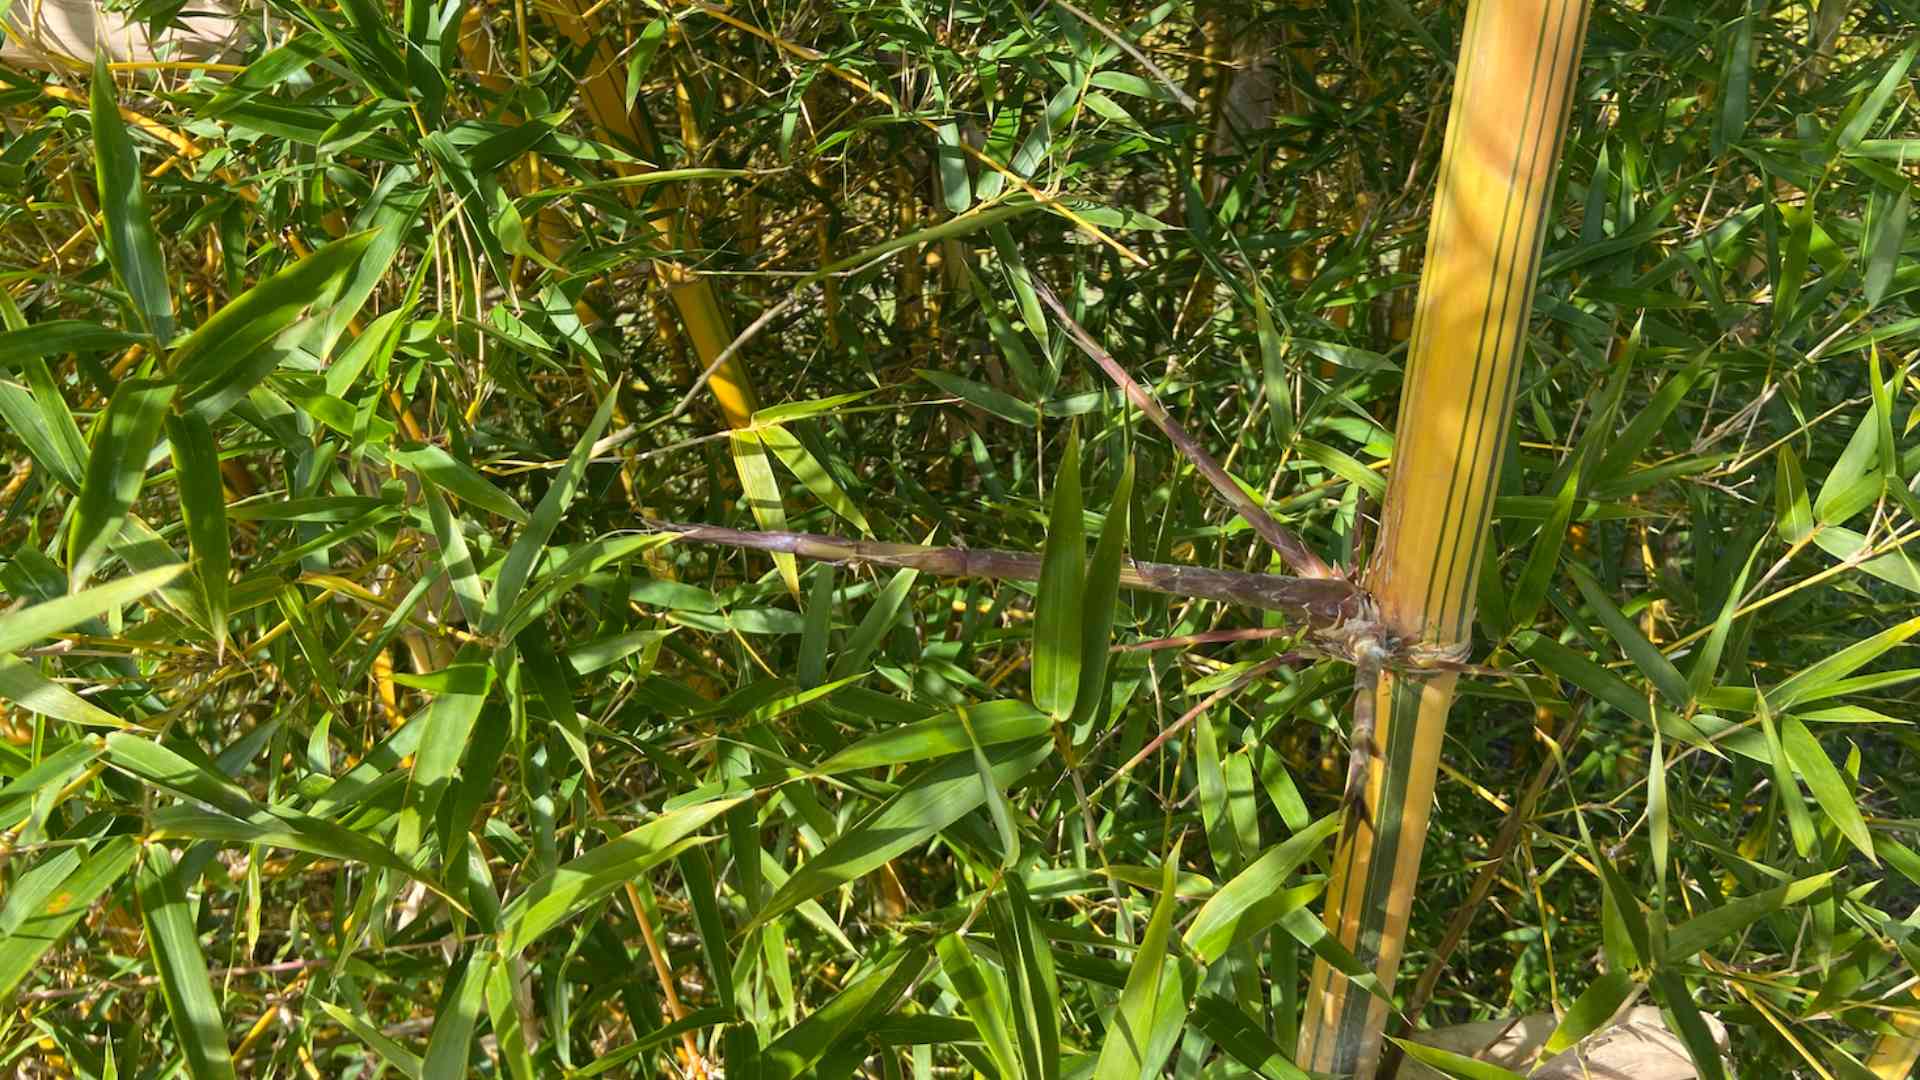 Genus Bambusa typical branching